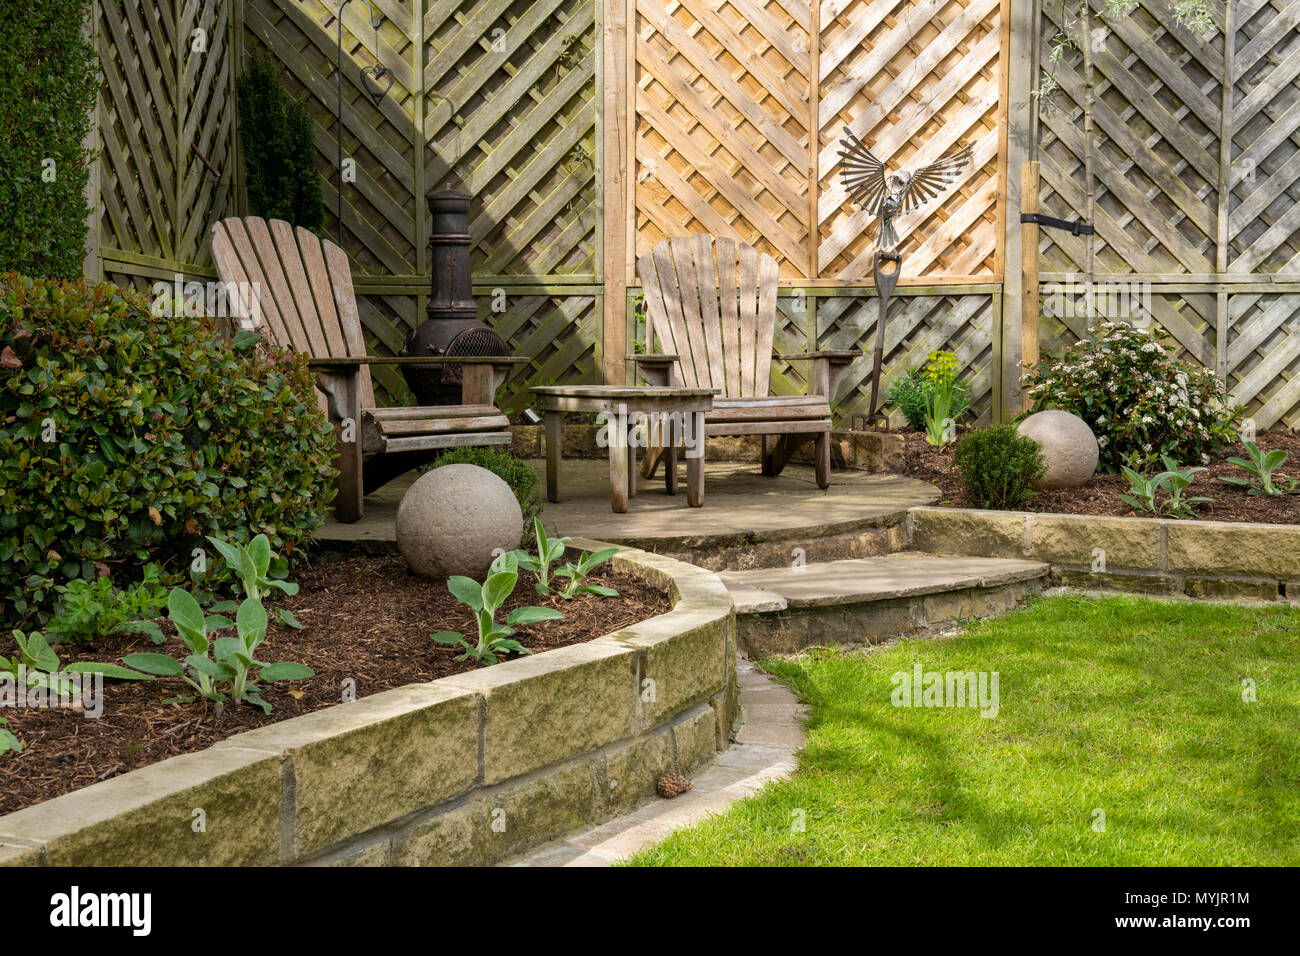 Schönen, gepflegten, privaten Garten close-up mit zeitgenössischem Design, Pflanzen, Terrasse & dekorative Funktionen - Yorkshire, England, UK. Stockfoto